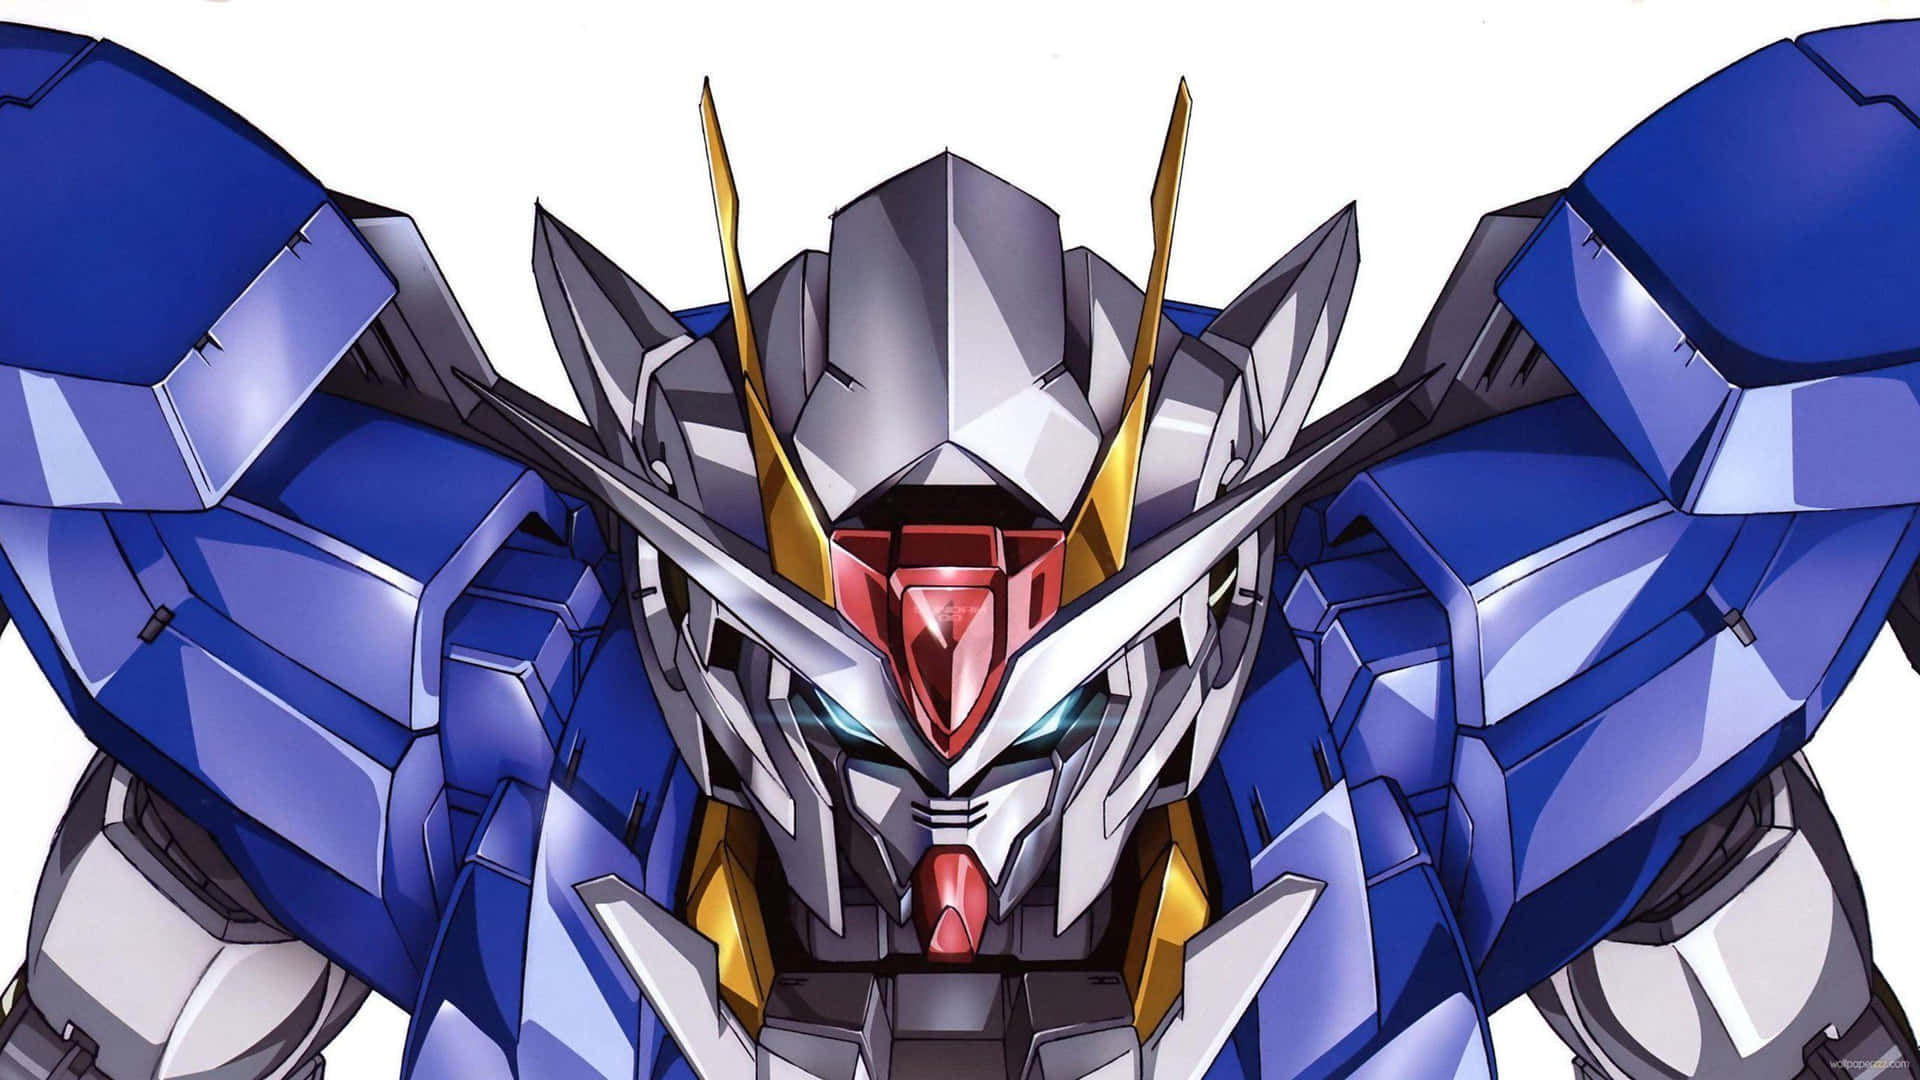 Vektorgundam 4k Hinweis: Dies Ist Eine Beliebte Darstellung Eines Gundam Im Vektorbasierten Stil In 4k-auflösung. Es Eignet Sich Hervorragend Als Hintergrundbild Für Computer Oder Mobilgeräte. Holen Sie Sich Jetzt Dieses Beeindruckende Wallpaper Und Verleihen Sie Ihrem Bildschirm Einen Futuristischen Look! Wallpaper